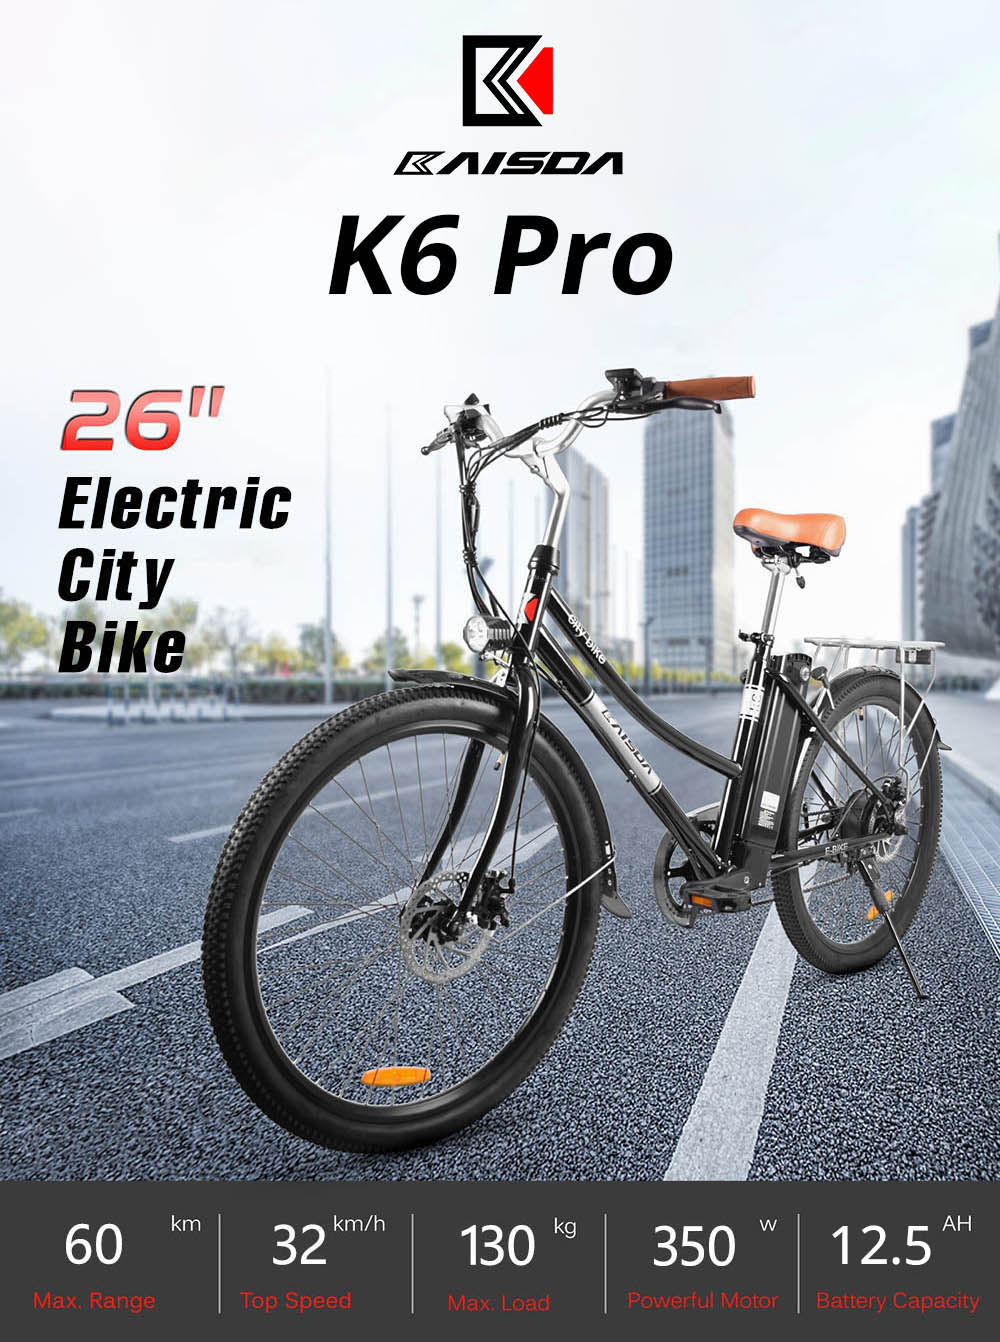 Electric Bike 26in KAISDA K6 Pro 36V 12.4Ah 350W 32Km/h Black